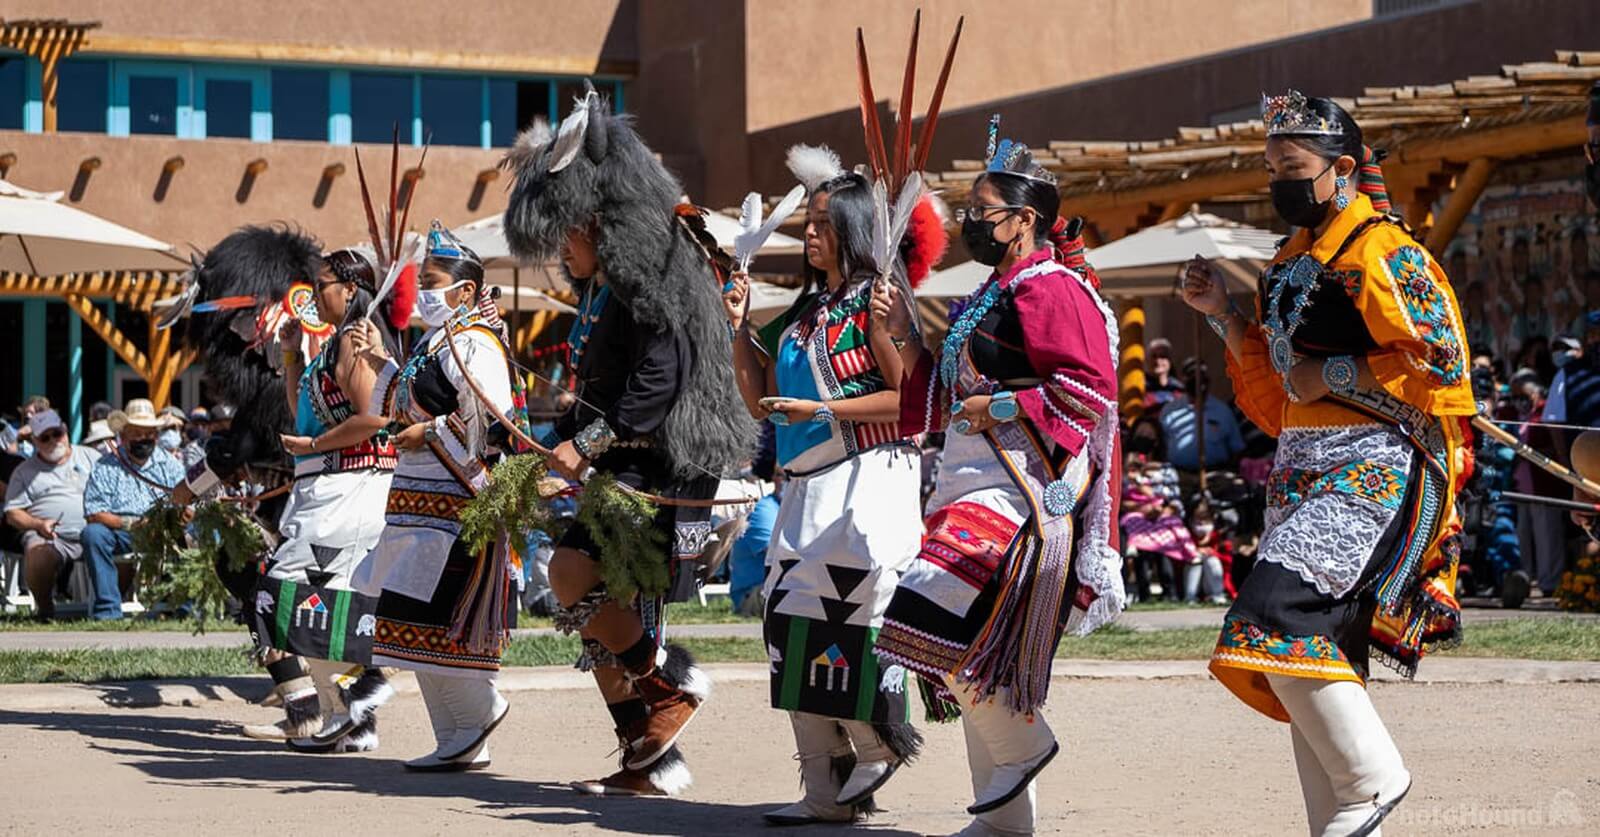 Image of Indian Pueblo Cultural Center by Brad Barnes